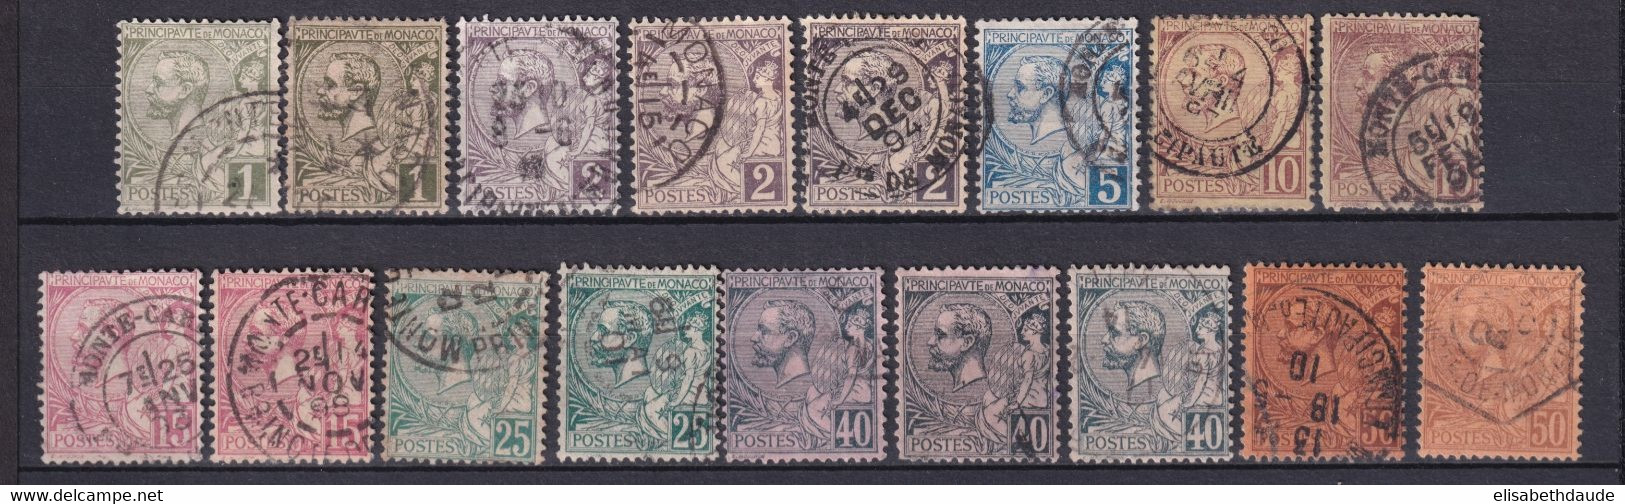 MONACO - 1891 - YVERT N°11/18 OBLITERES BELLES VARIETES De TEINTES ! - COTE = 175+ EUROS - Used Stamps